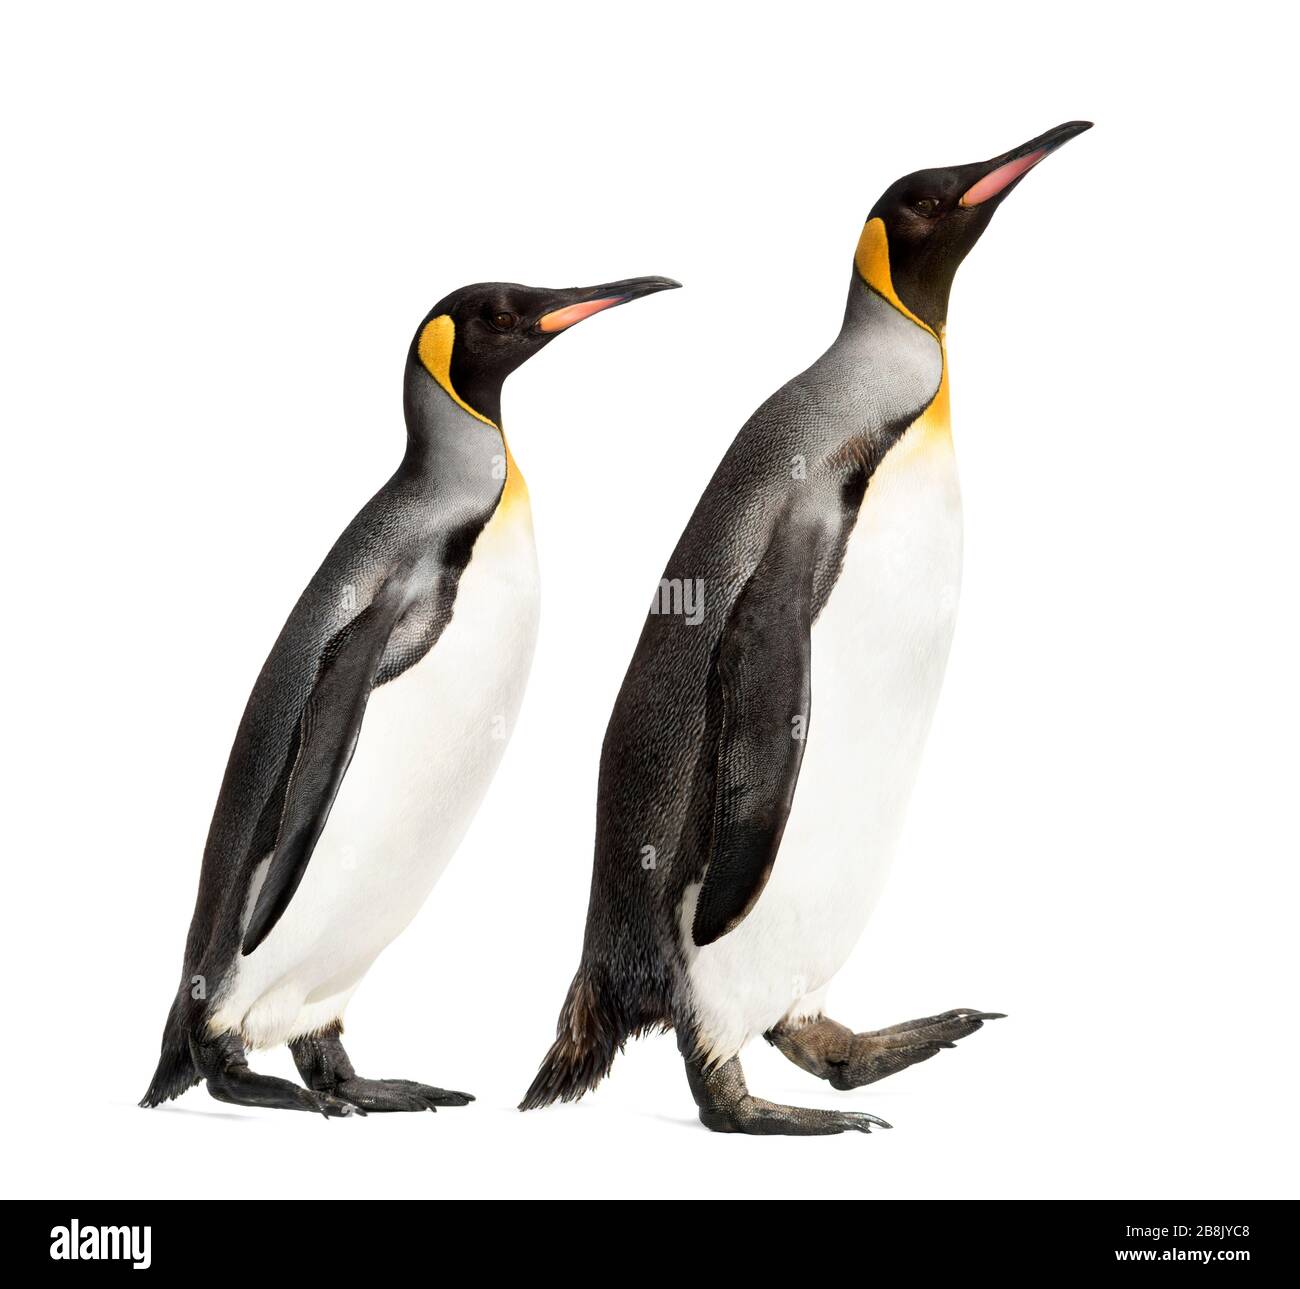 Vue latérale d'une marche avec un très grand pingouin, isolée sur le blanc Banque D'Images